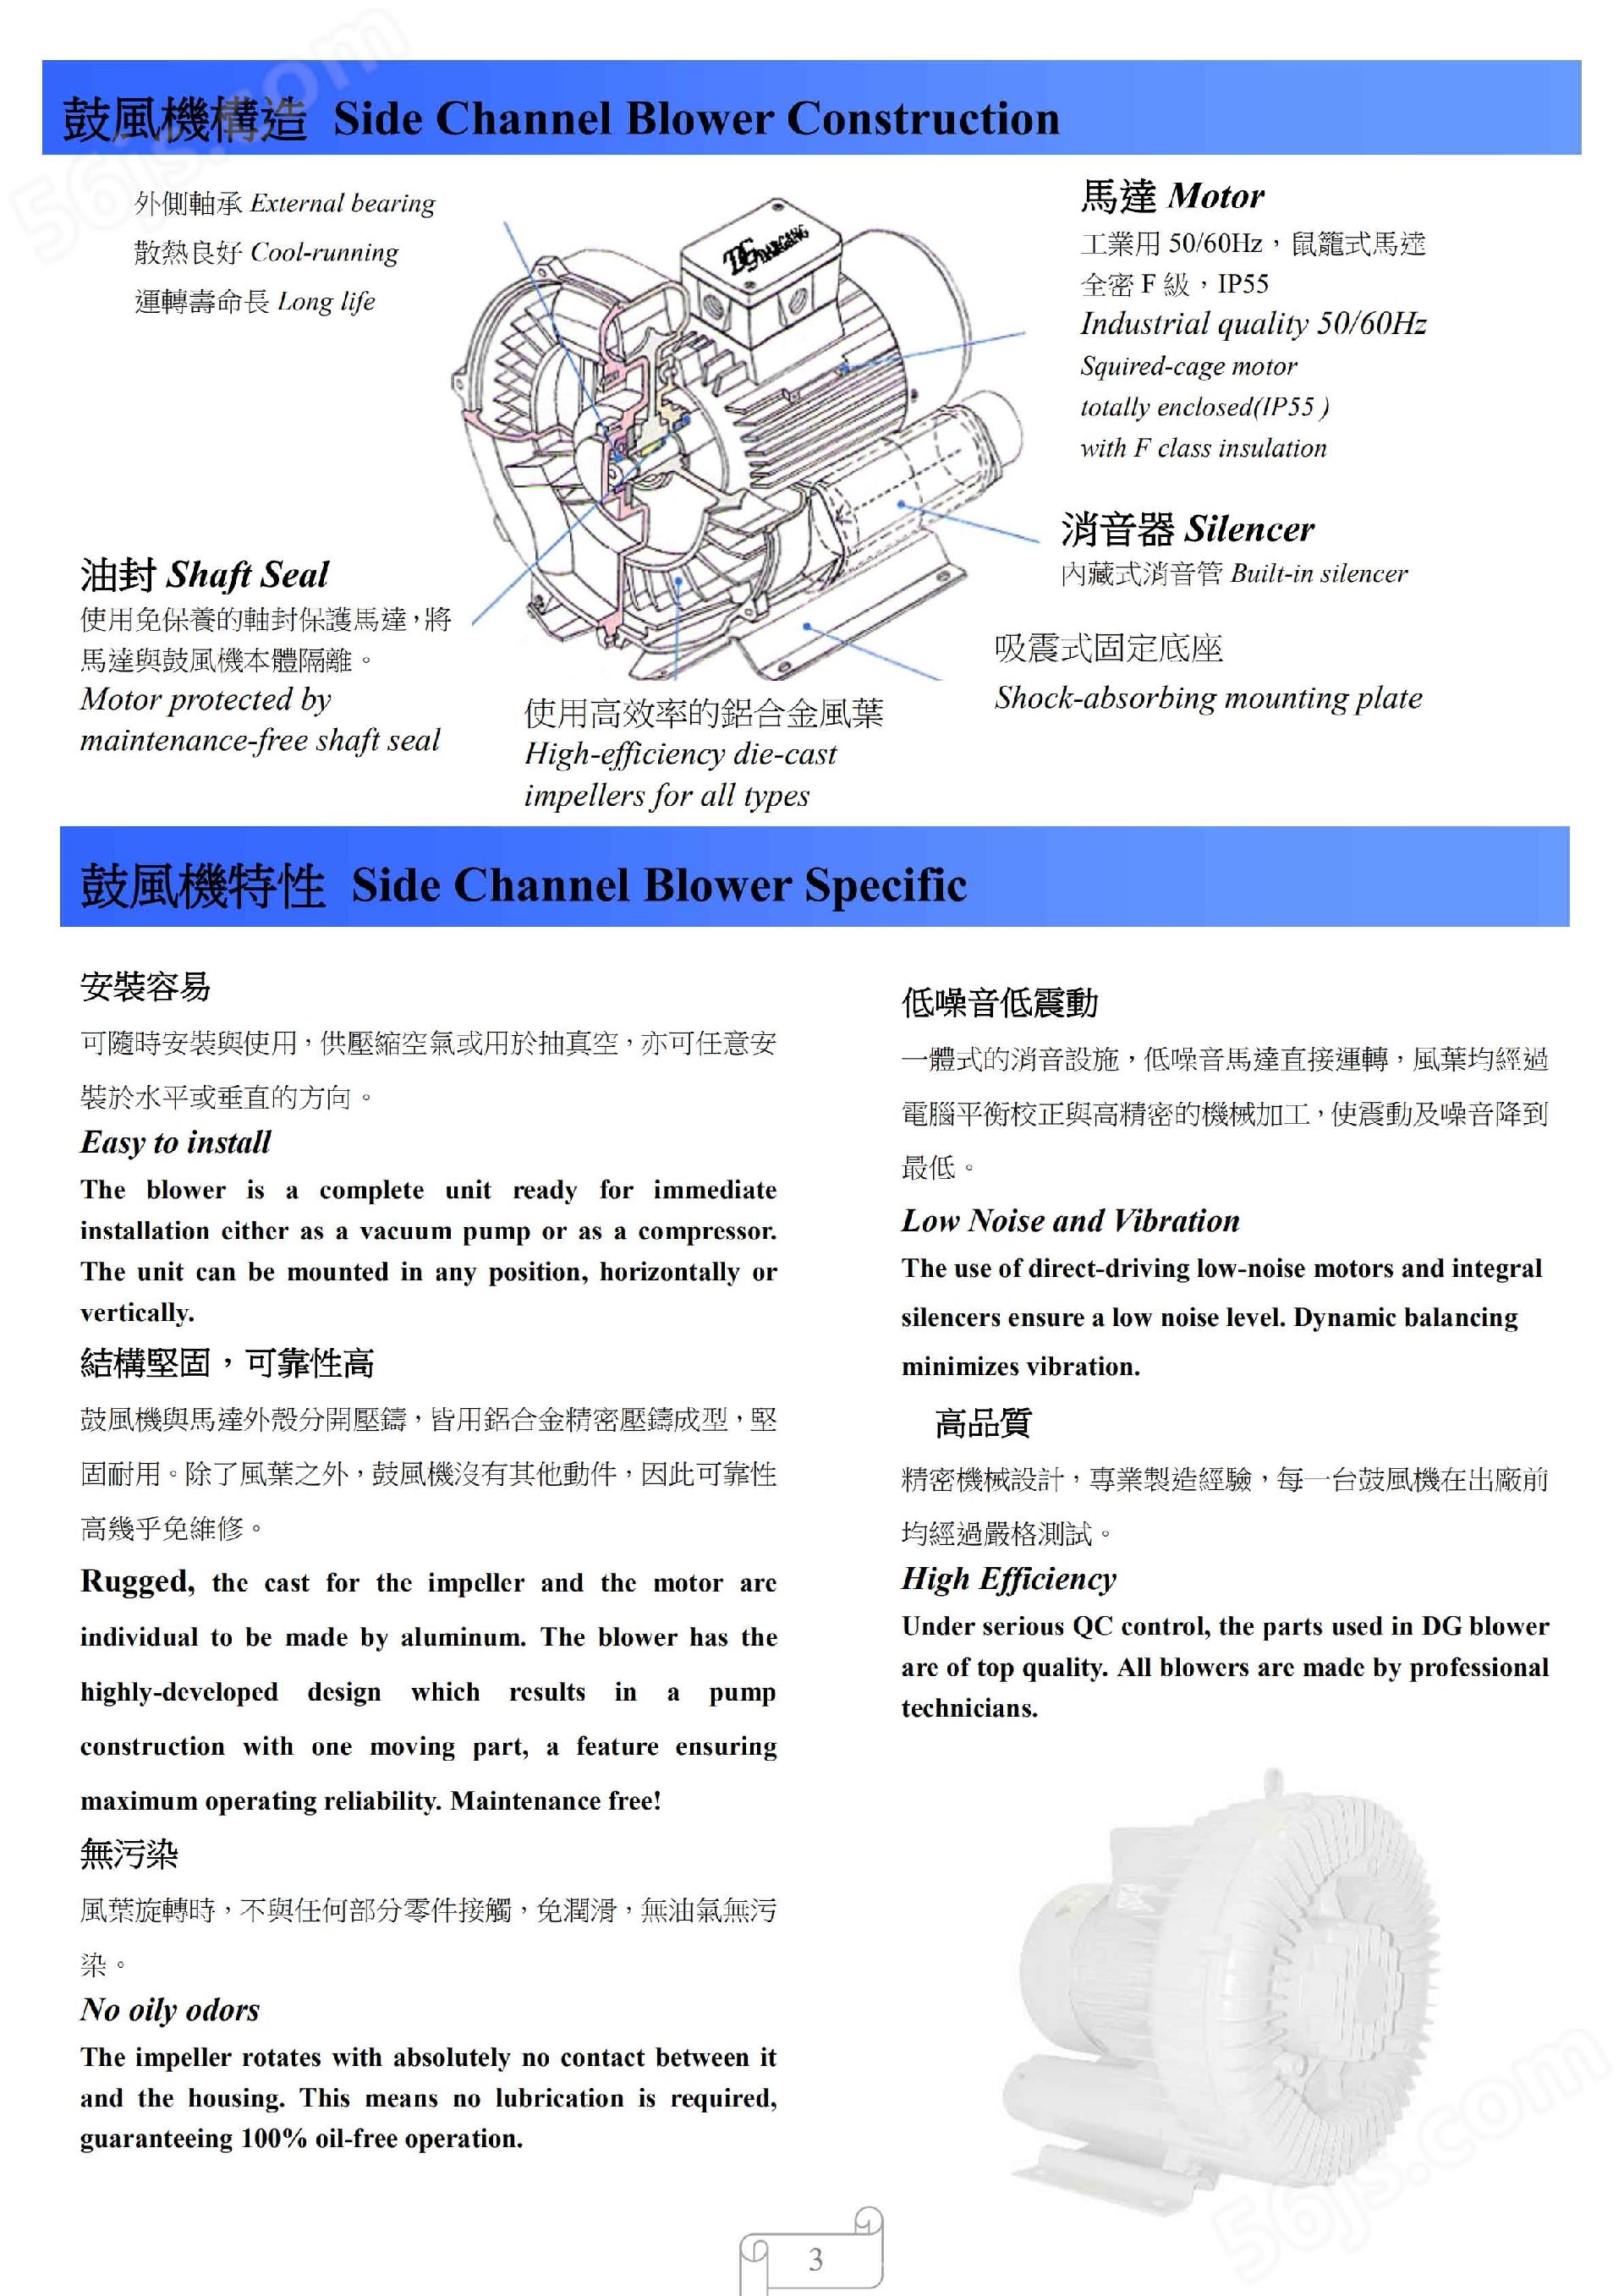 工业自动化设备配套TAIWAN达纲DG-400-46高压漩涡风机--上海梁瑾机电设备有限公司